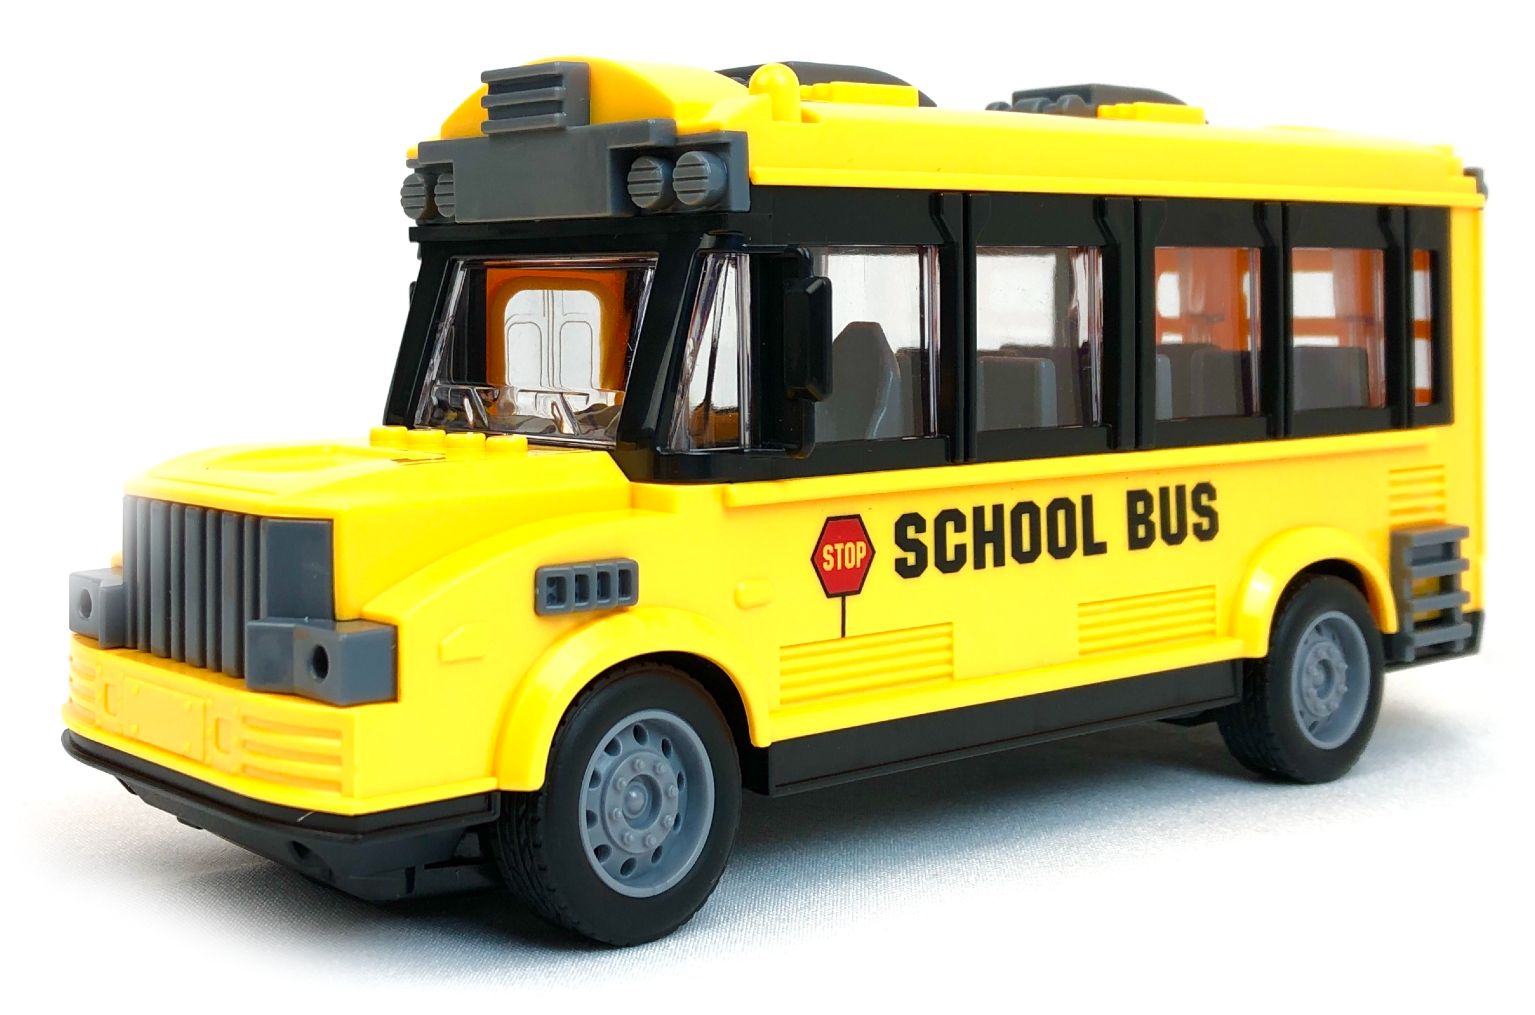 Радиоуправляемый школьный автобус City Bus School Bus, 1:30 радиоуправляемый школьный автобус city bus school bus 1 30